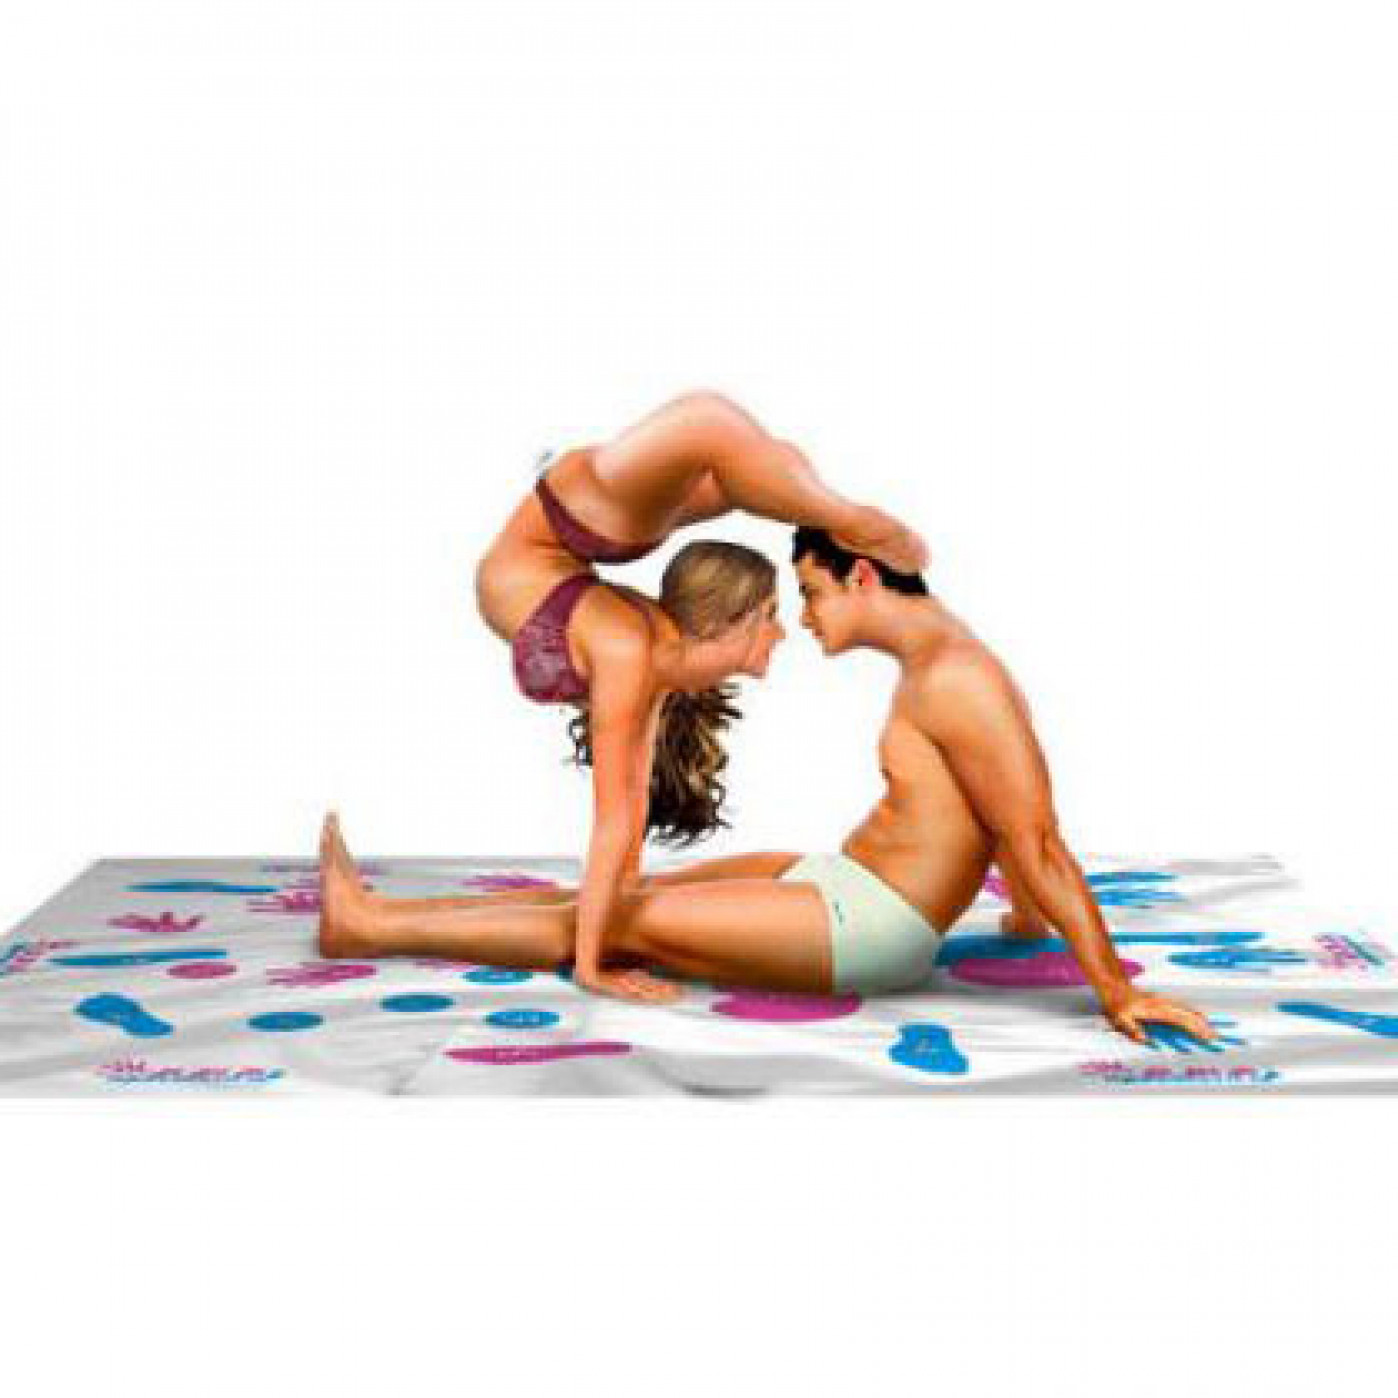 Yoga Kamasutra